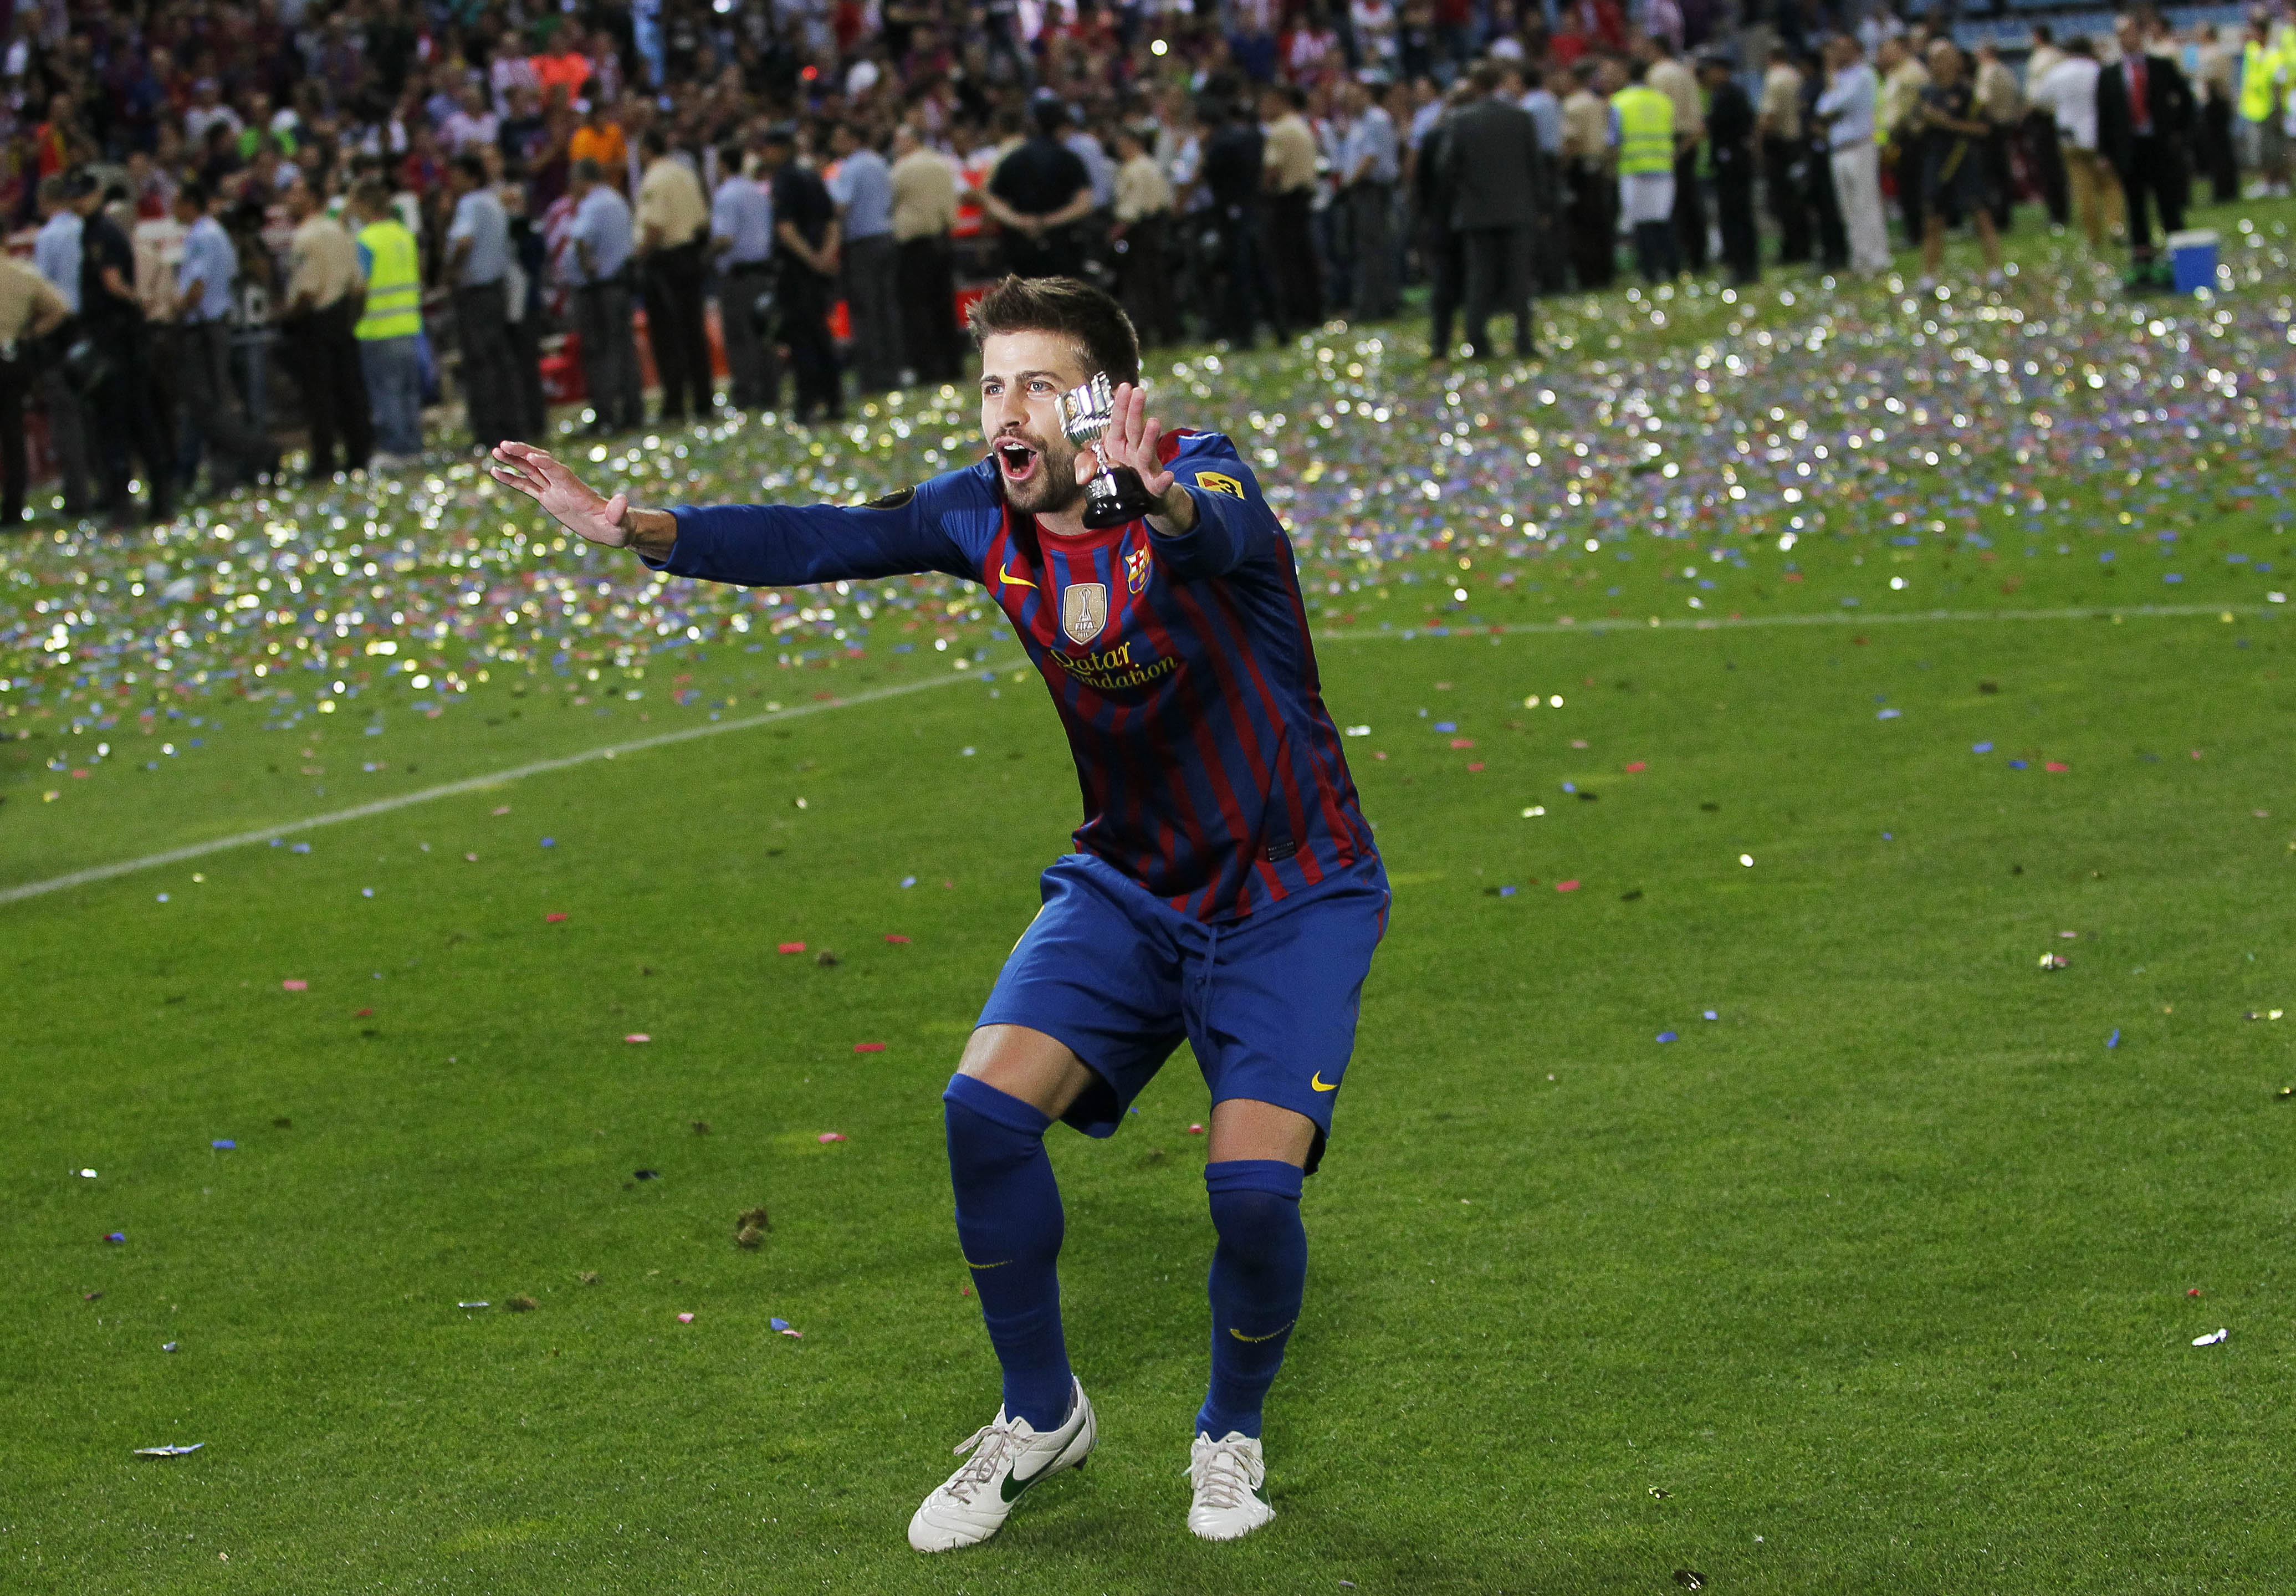 Totalt gjorde Messi 66 mål för Barcelona den här säsongen vilket är ett nytt rekord.